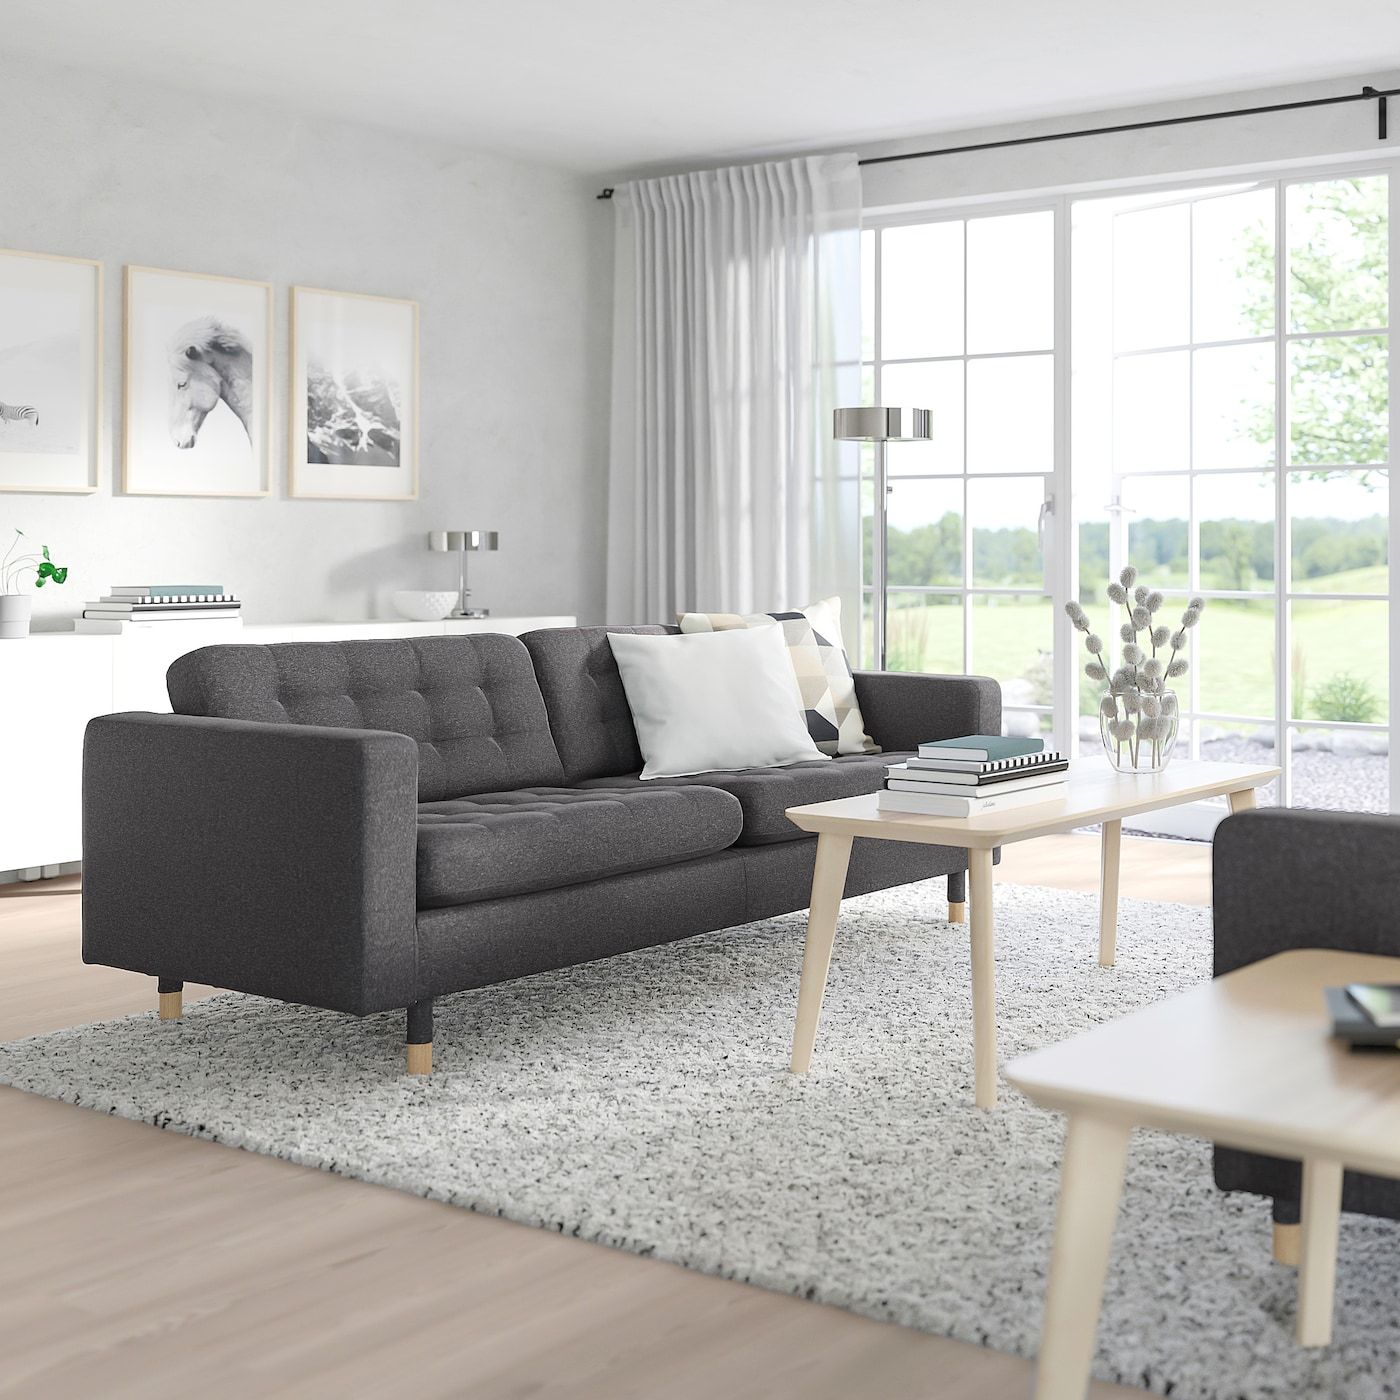 Morabo Sofa, Gunnared Dark Gray – Ikea Ca Intended For Sofas In Dark Grey (View 9 of 15)